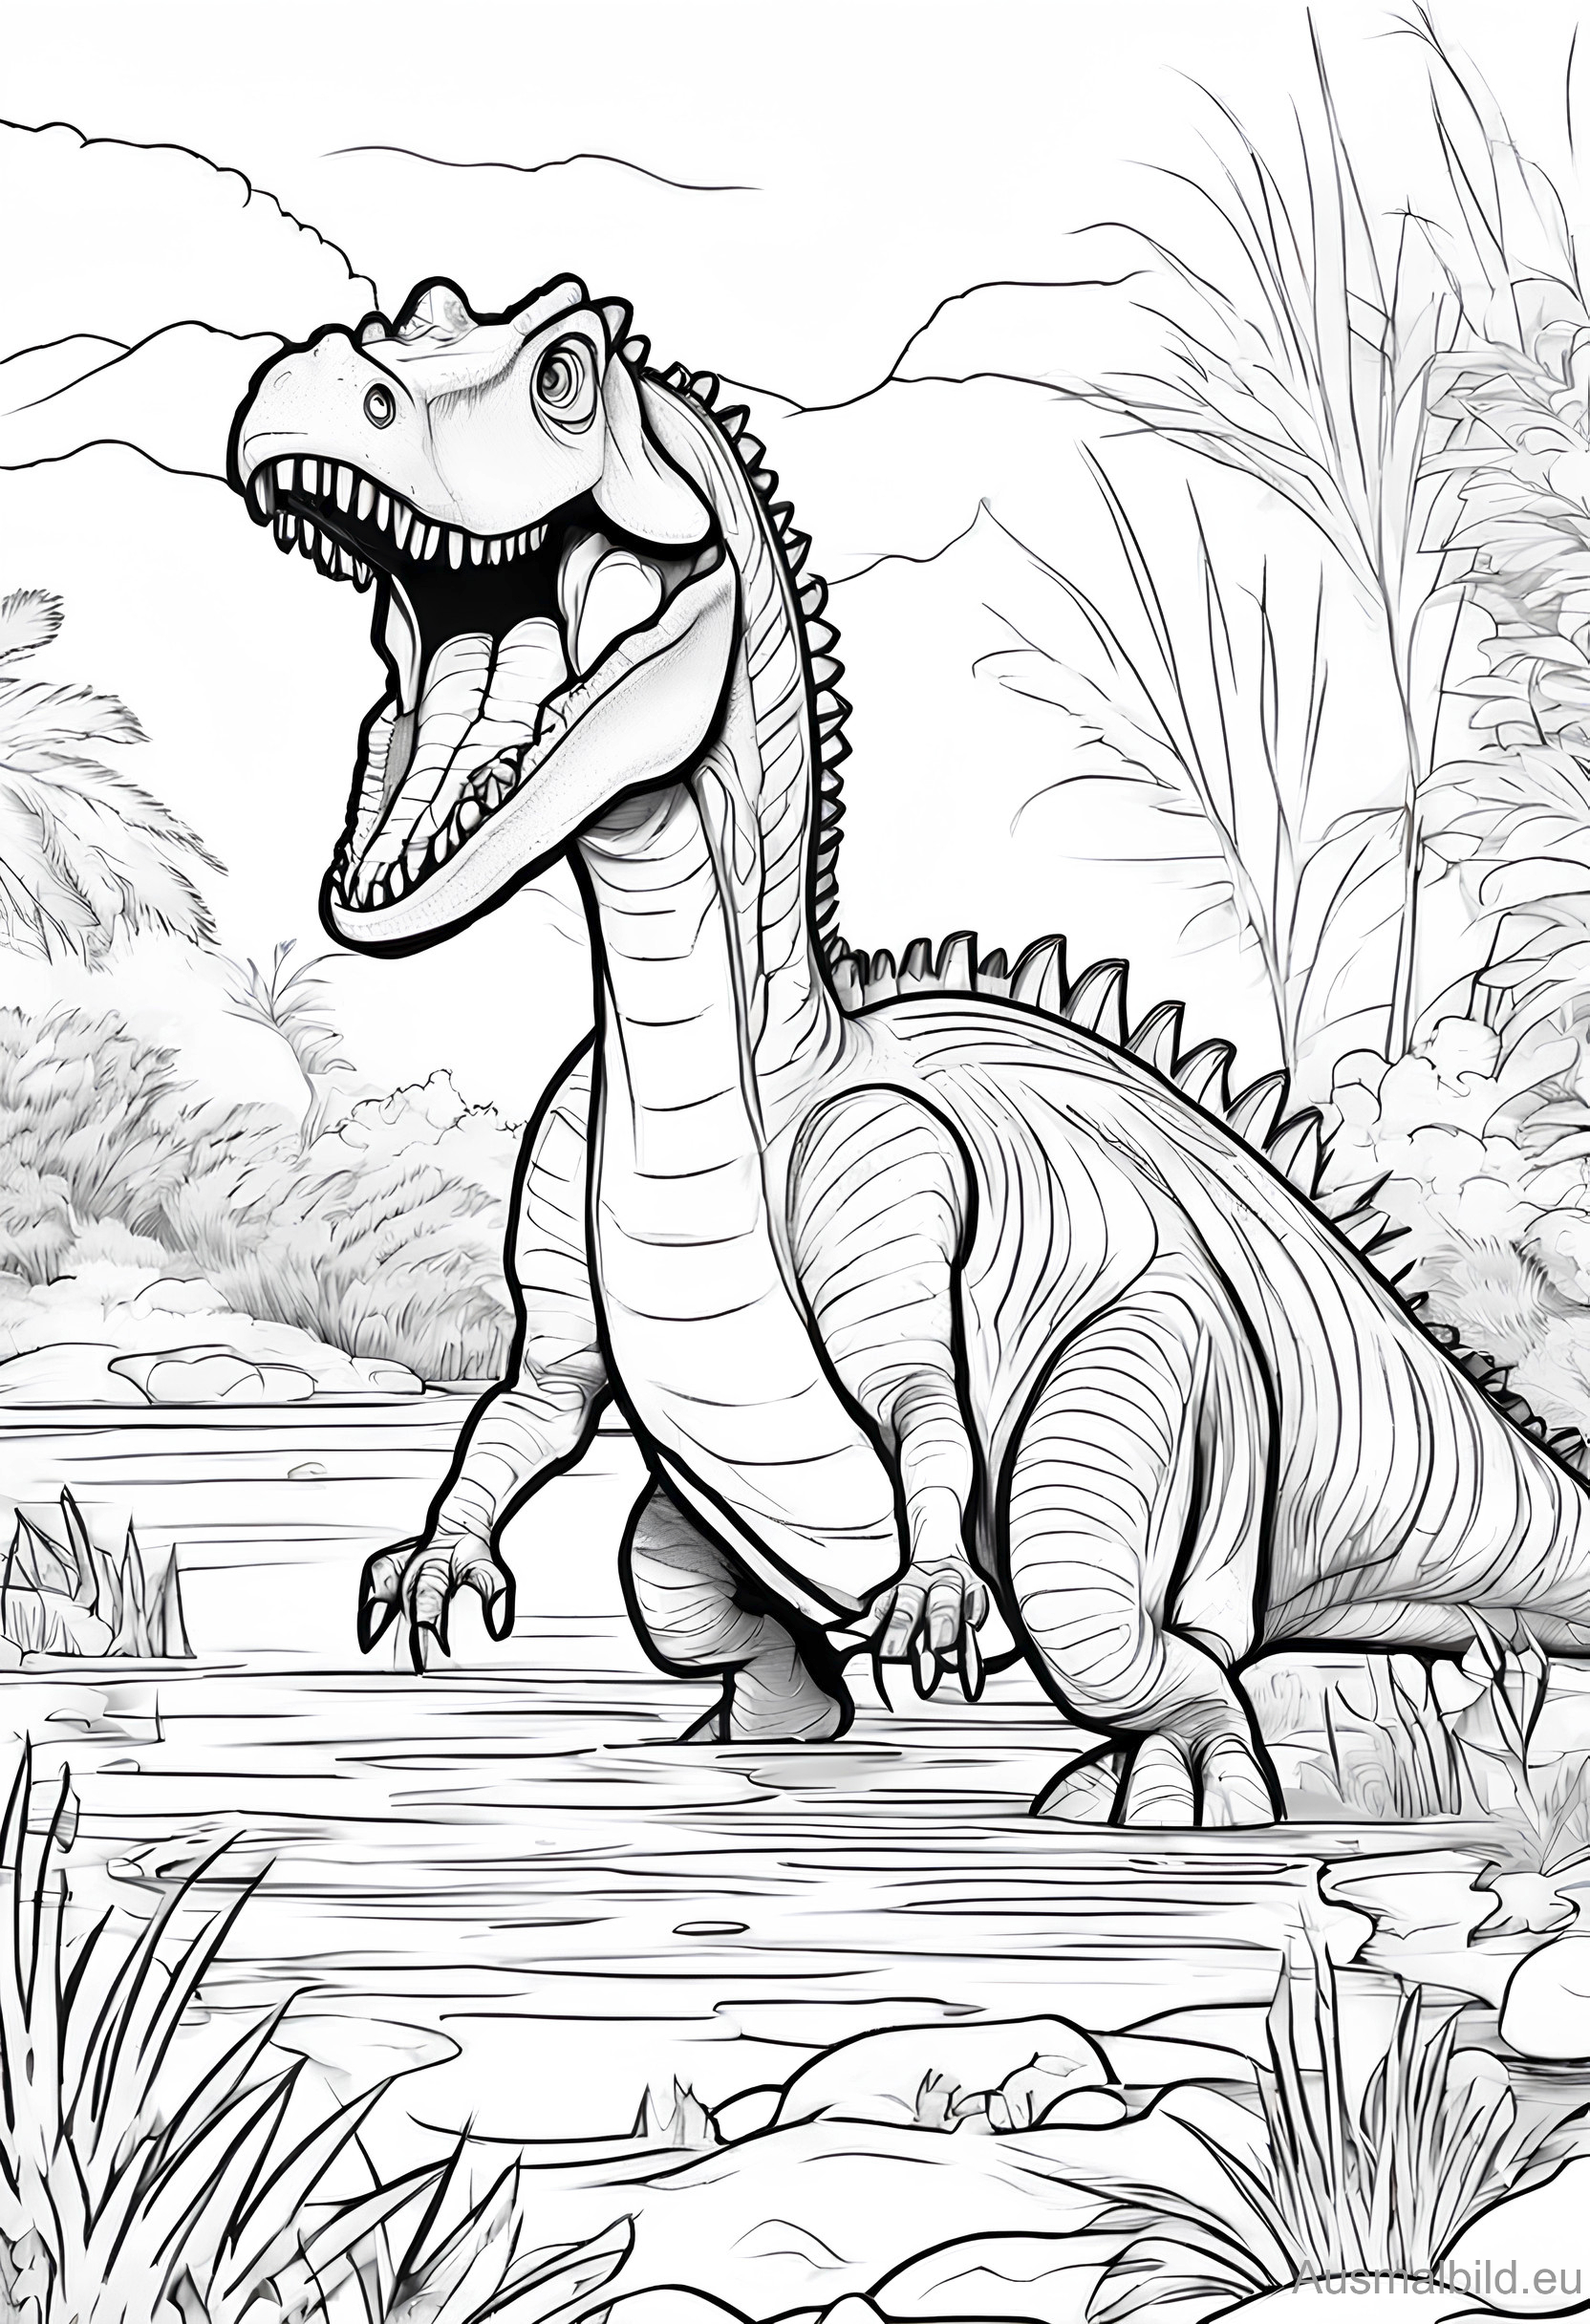 Ausmalbild: Spinosaurus